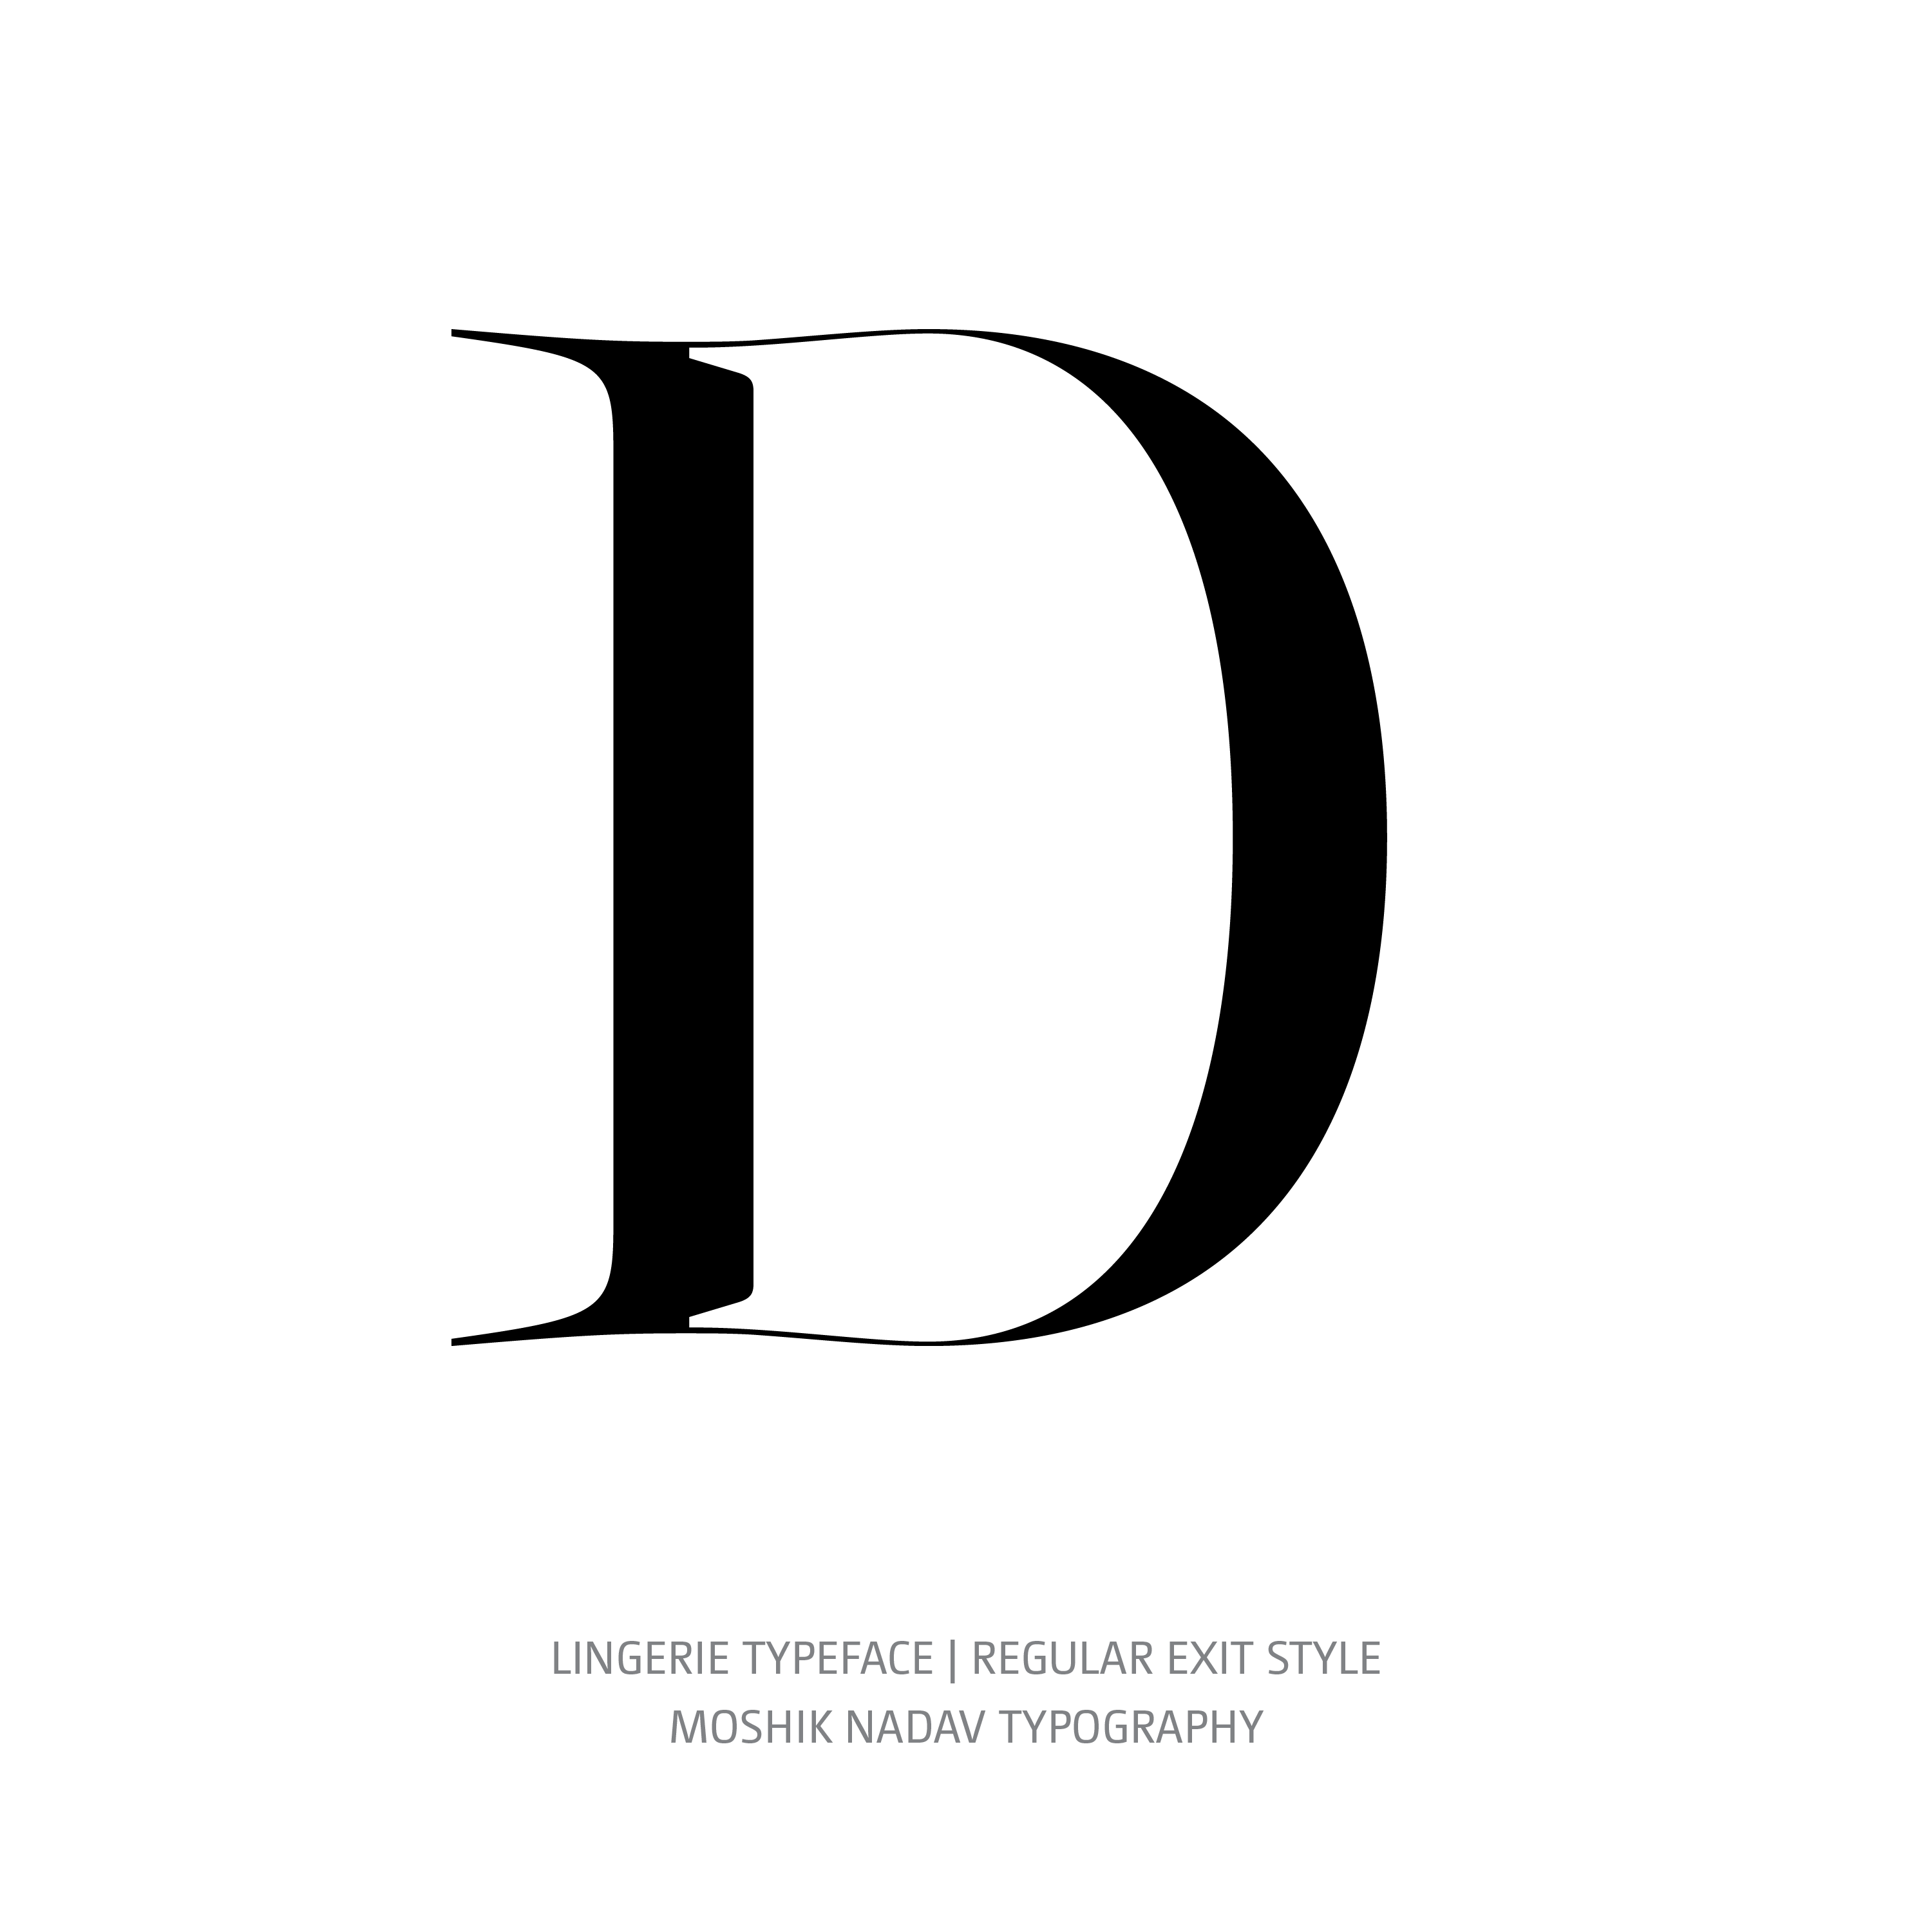 Lingerie Typeface Regular Exit D